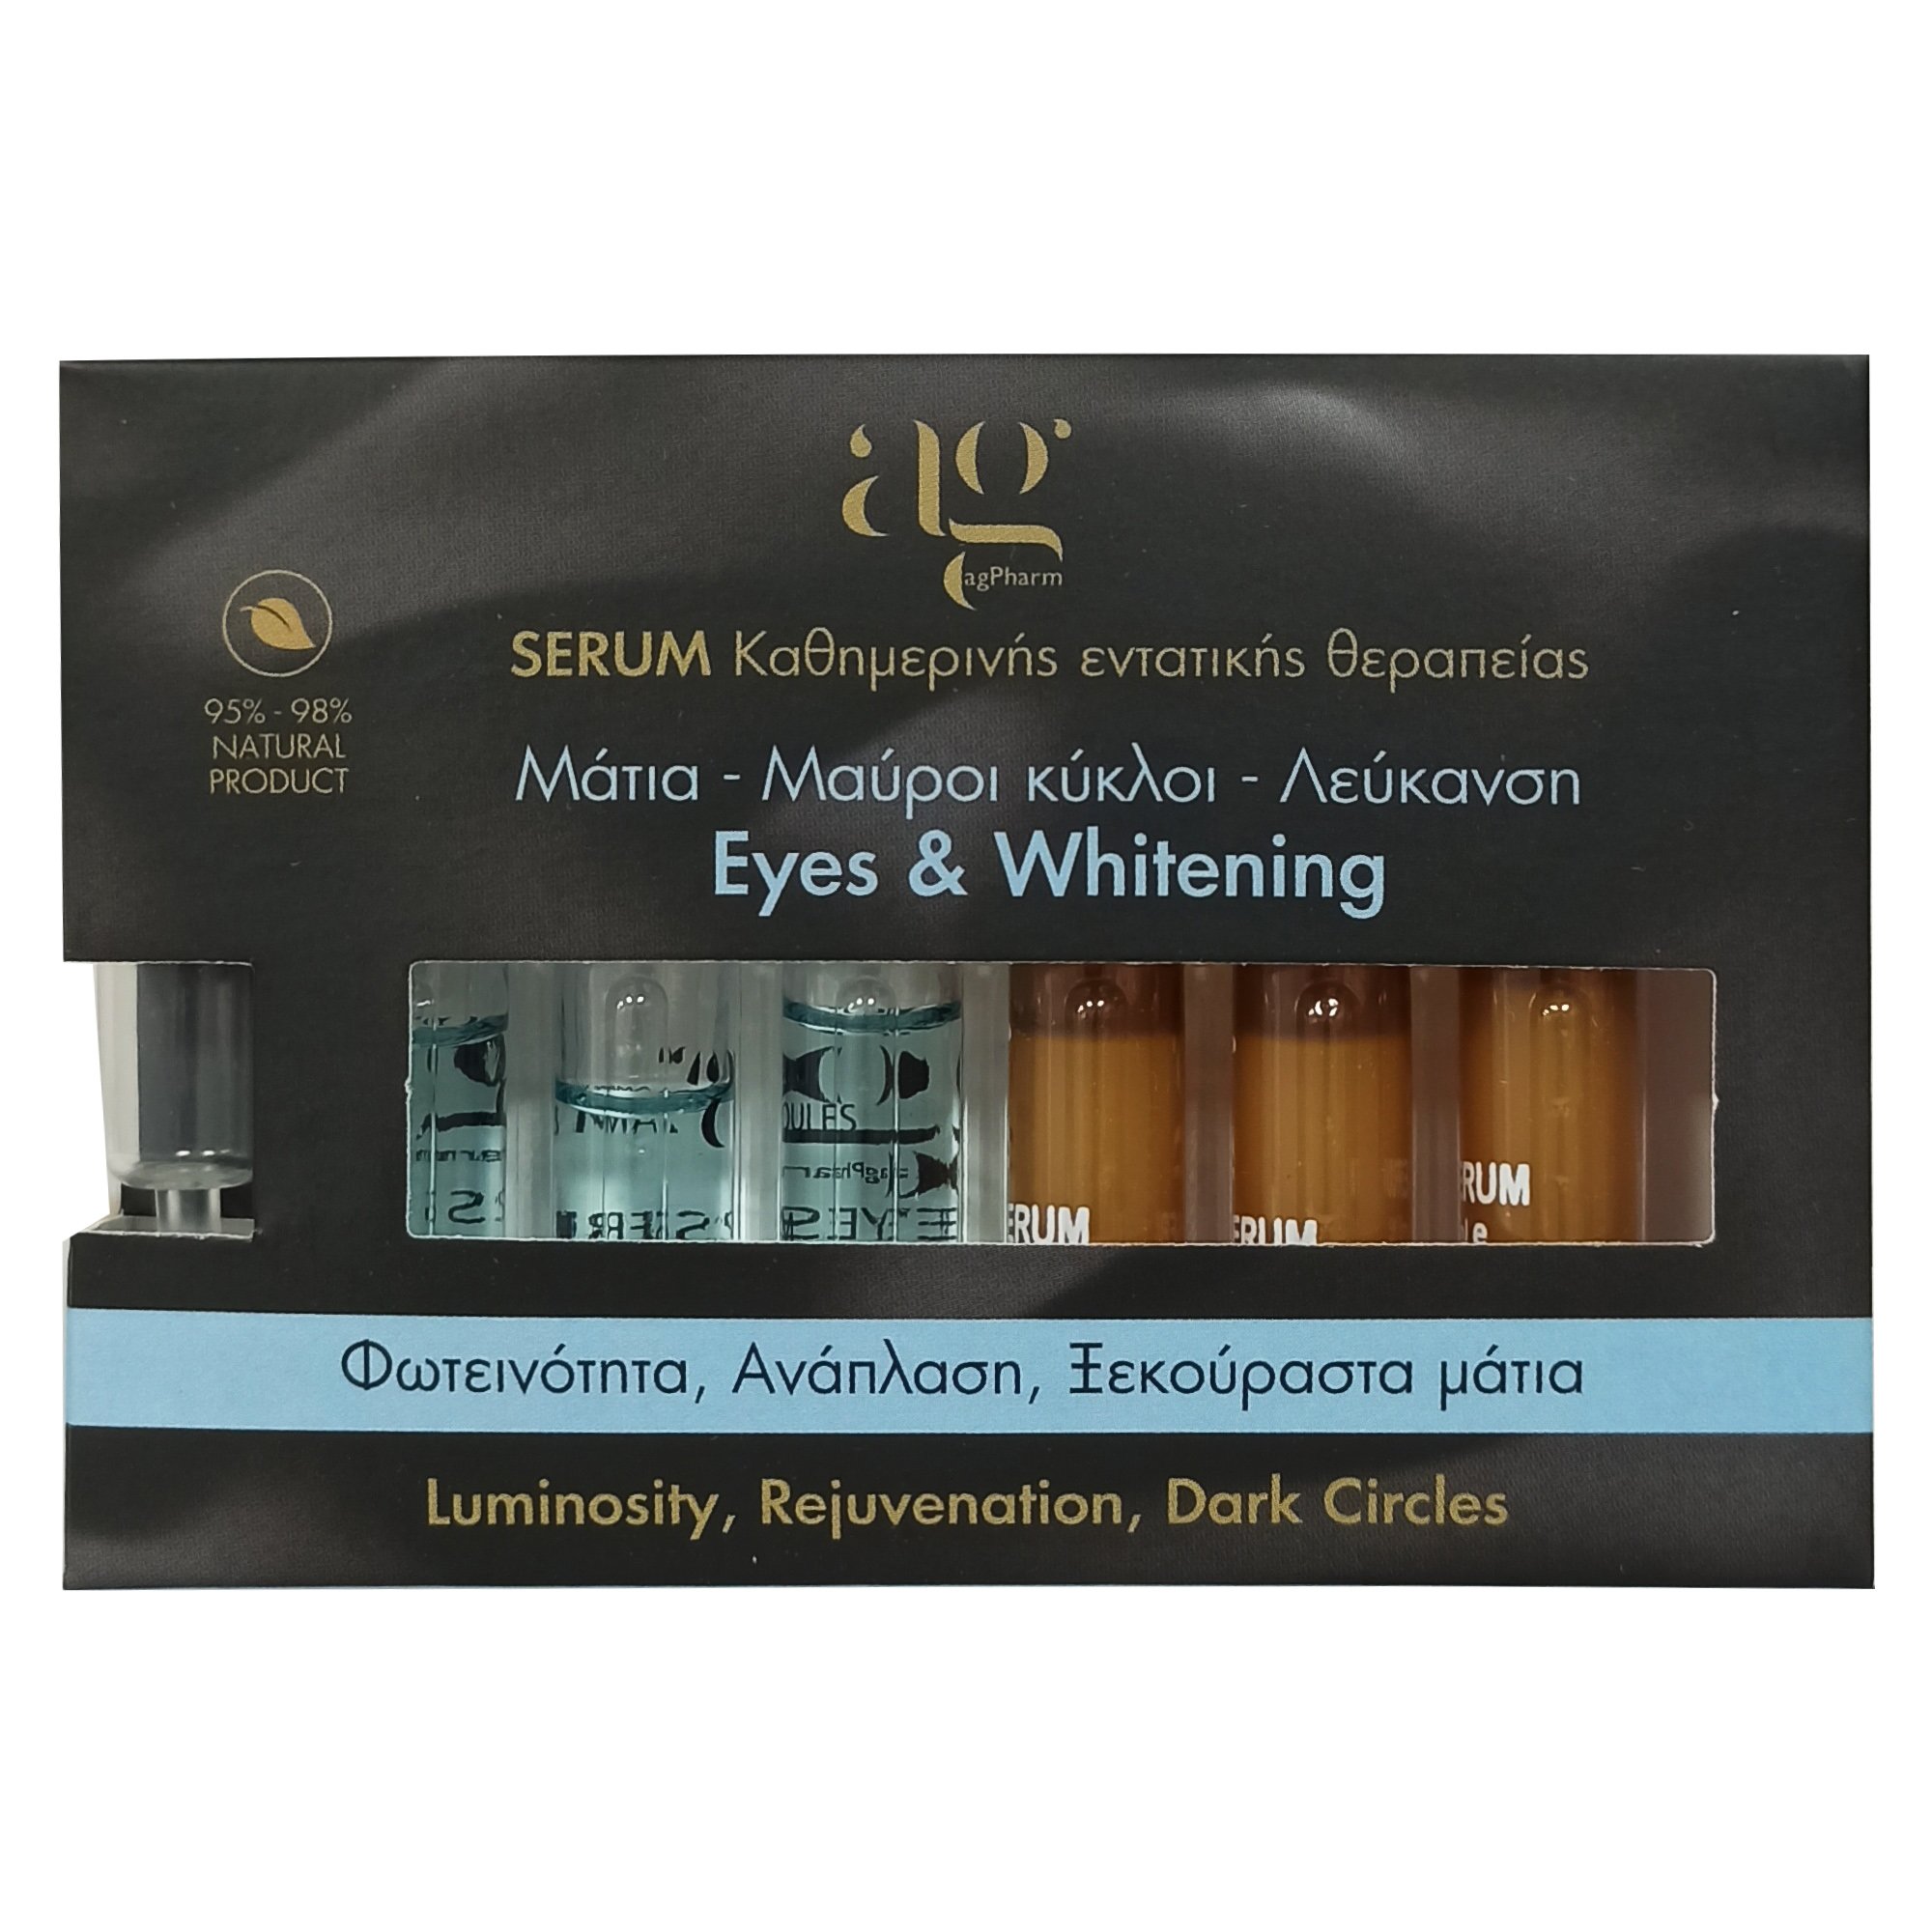 Εικόνα από AgPharm Eyes & Whitening Face Serum Καθημερινής Εντατικής Θεραπείας για Μάτια, Μαύρους Κύκλους & Λεύκανση Προσώπου με Dropper 6x2ml